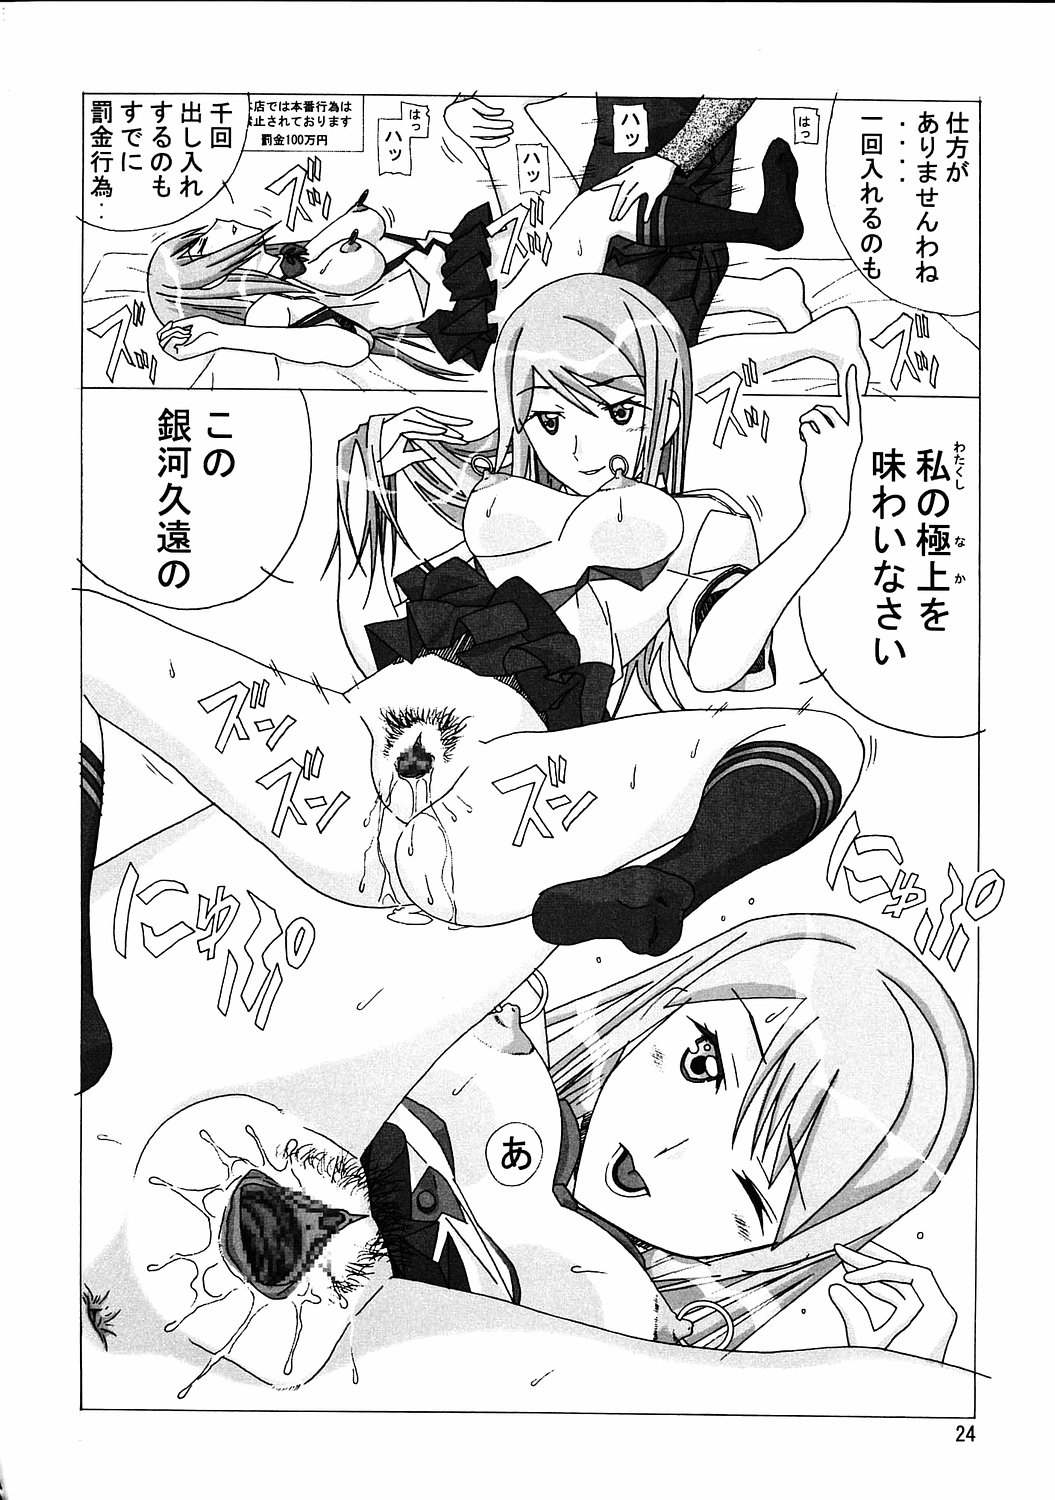 [AB NORMAL (NEW AB)] Aido 35 Karei naru Gokujou (Gokujou Seitokai) page 23 full